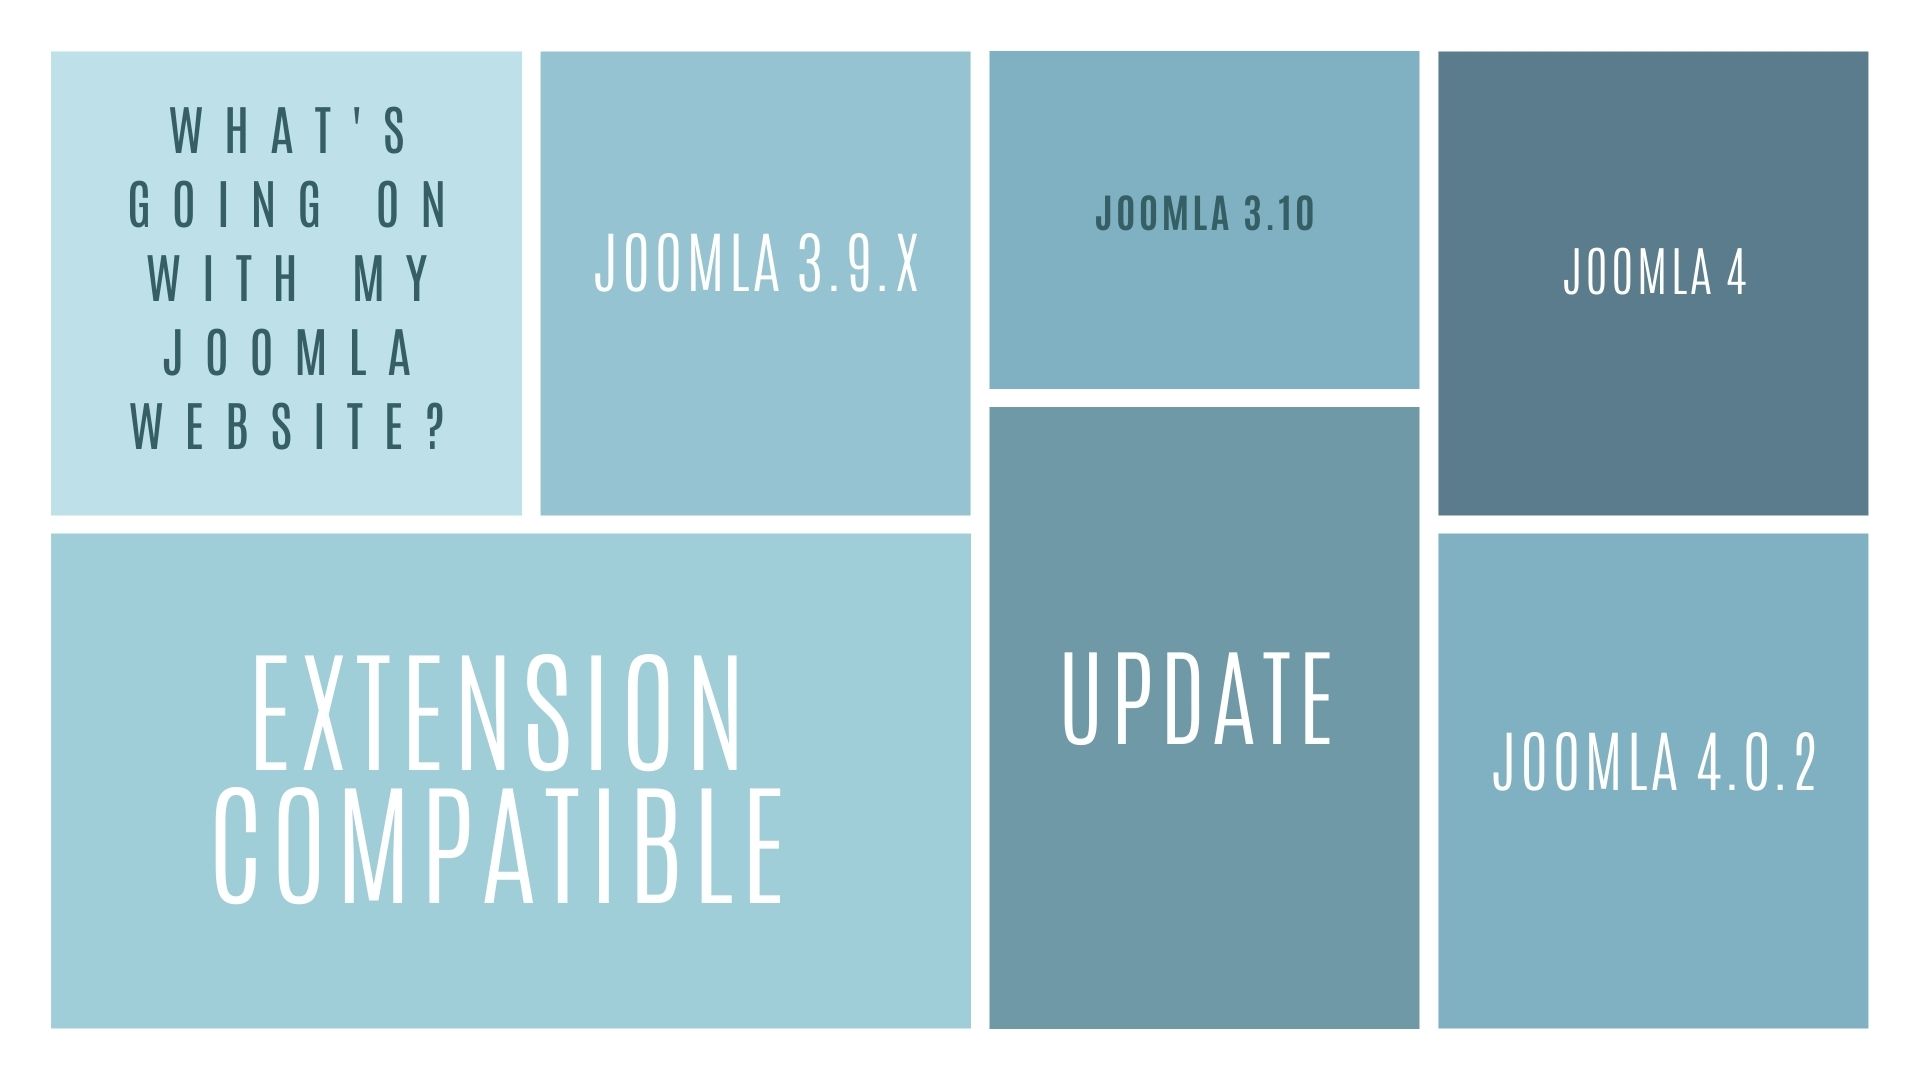 Joomla4 update